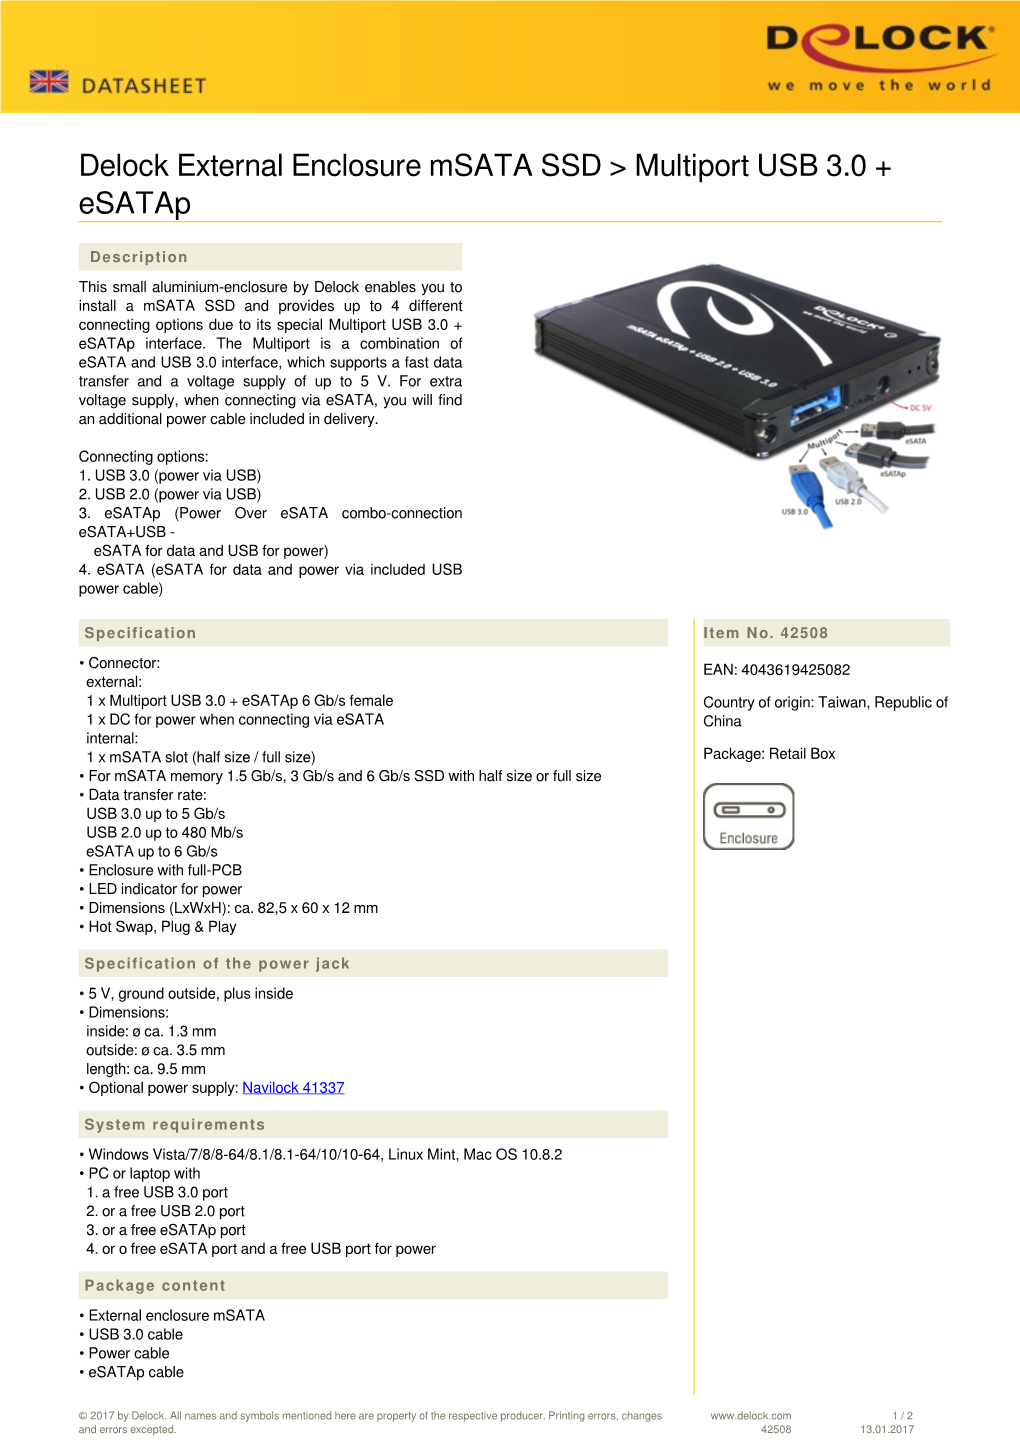 Delock External Enclosure Msata SSD &gt; Multiport USB 3.0 + Esatap